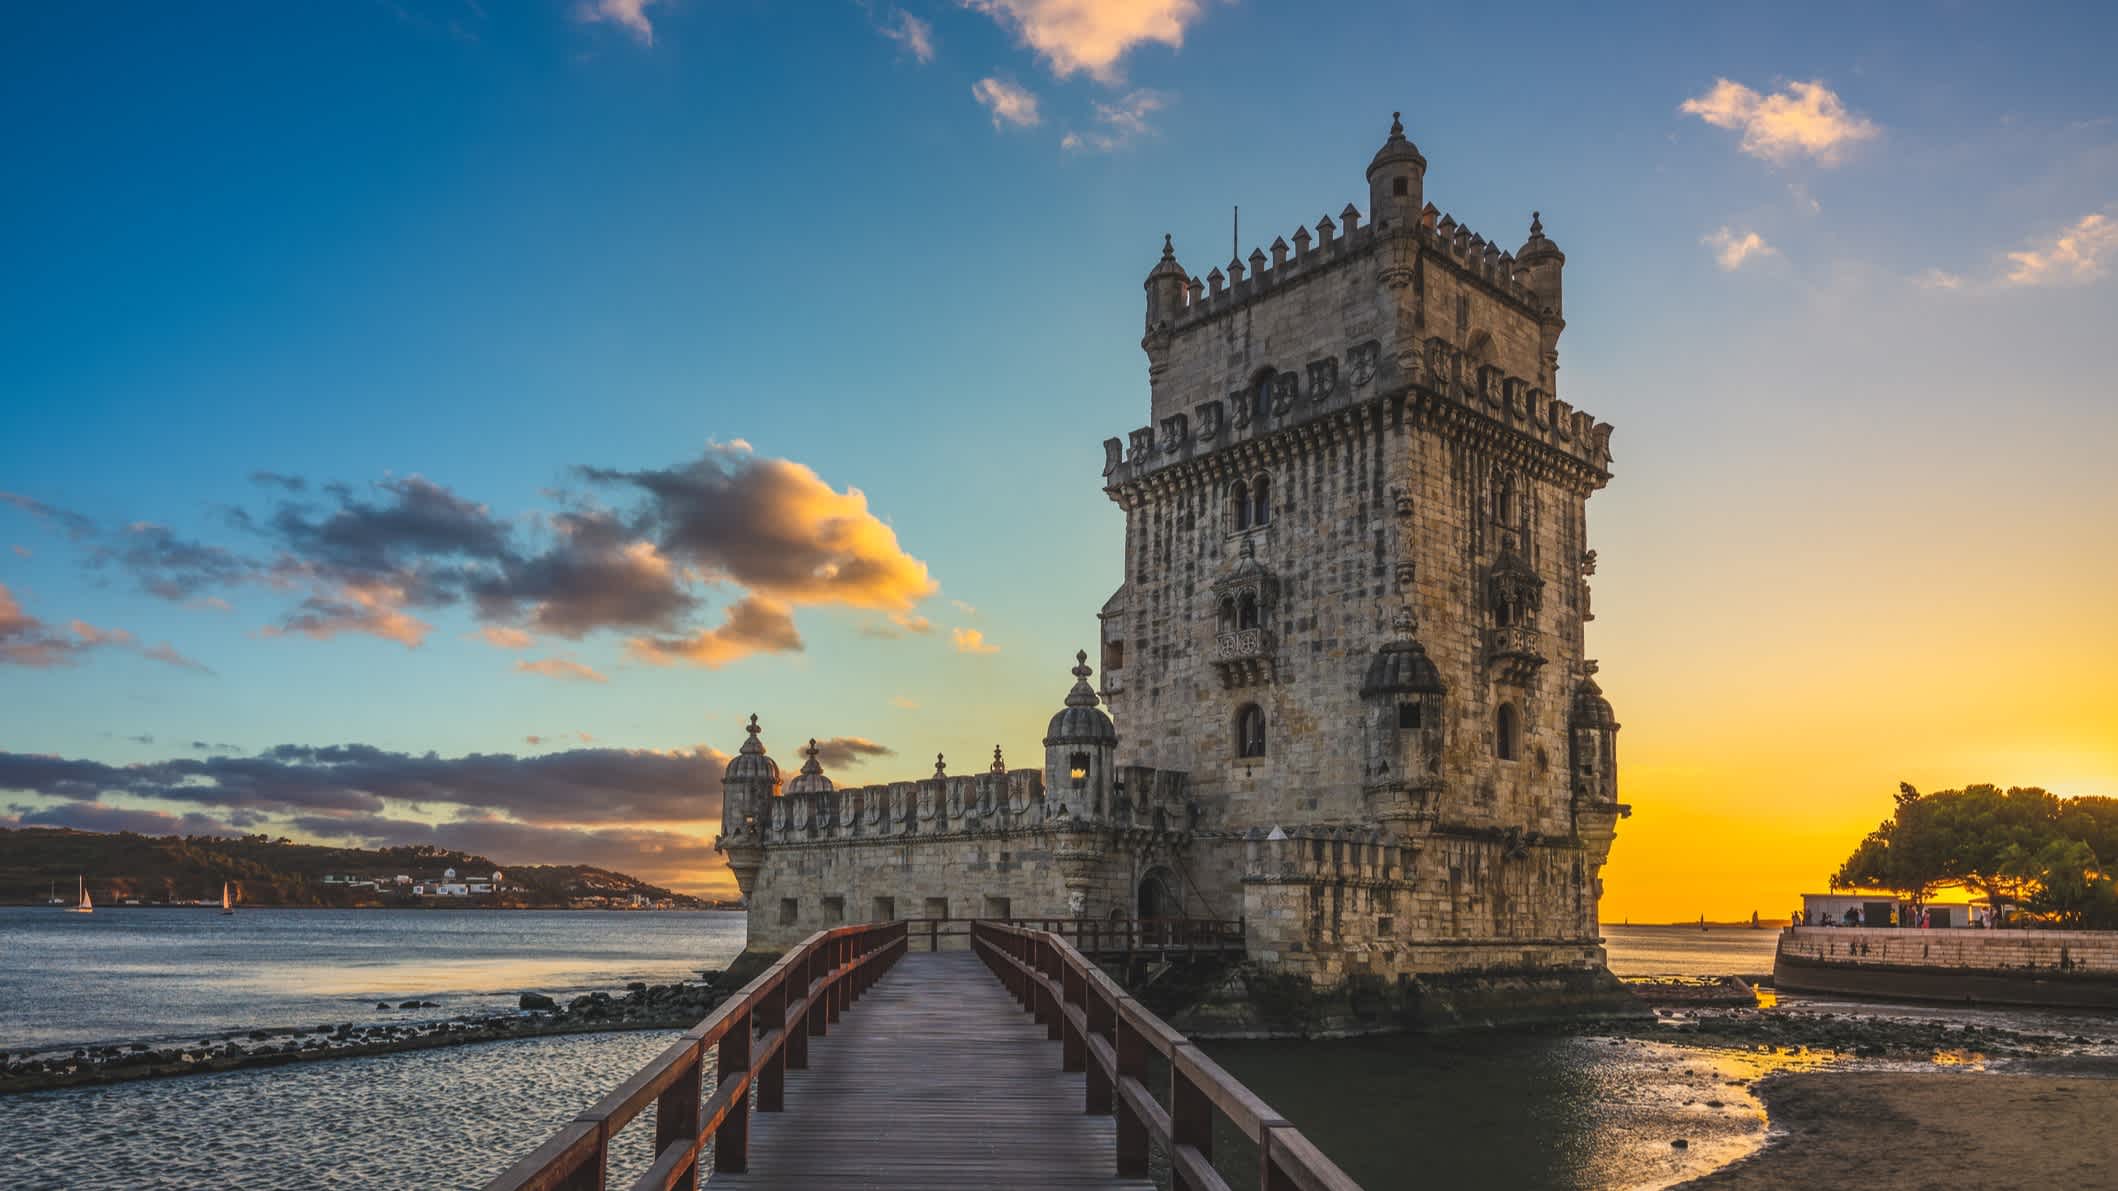 Belem Tower im Stadtteil Belem von Lissabon in der Abenddämmerung, Portugal. 

